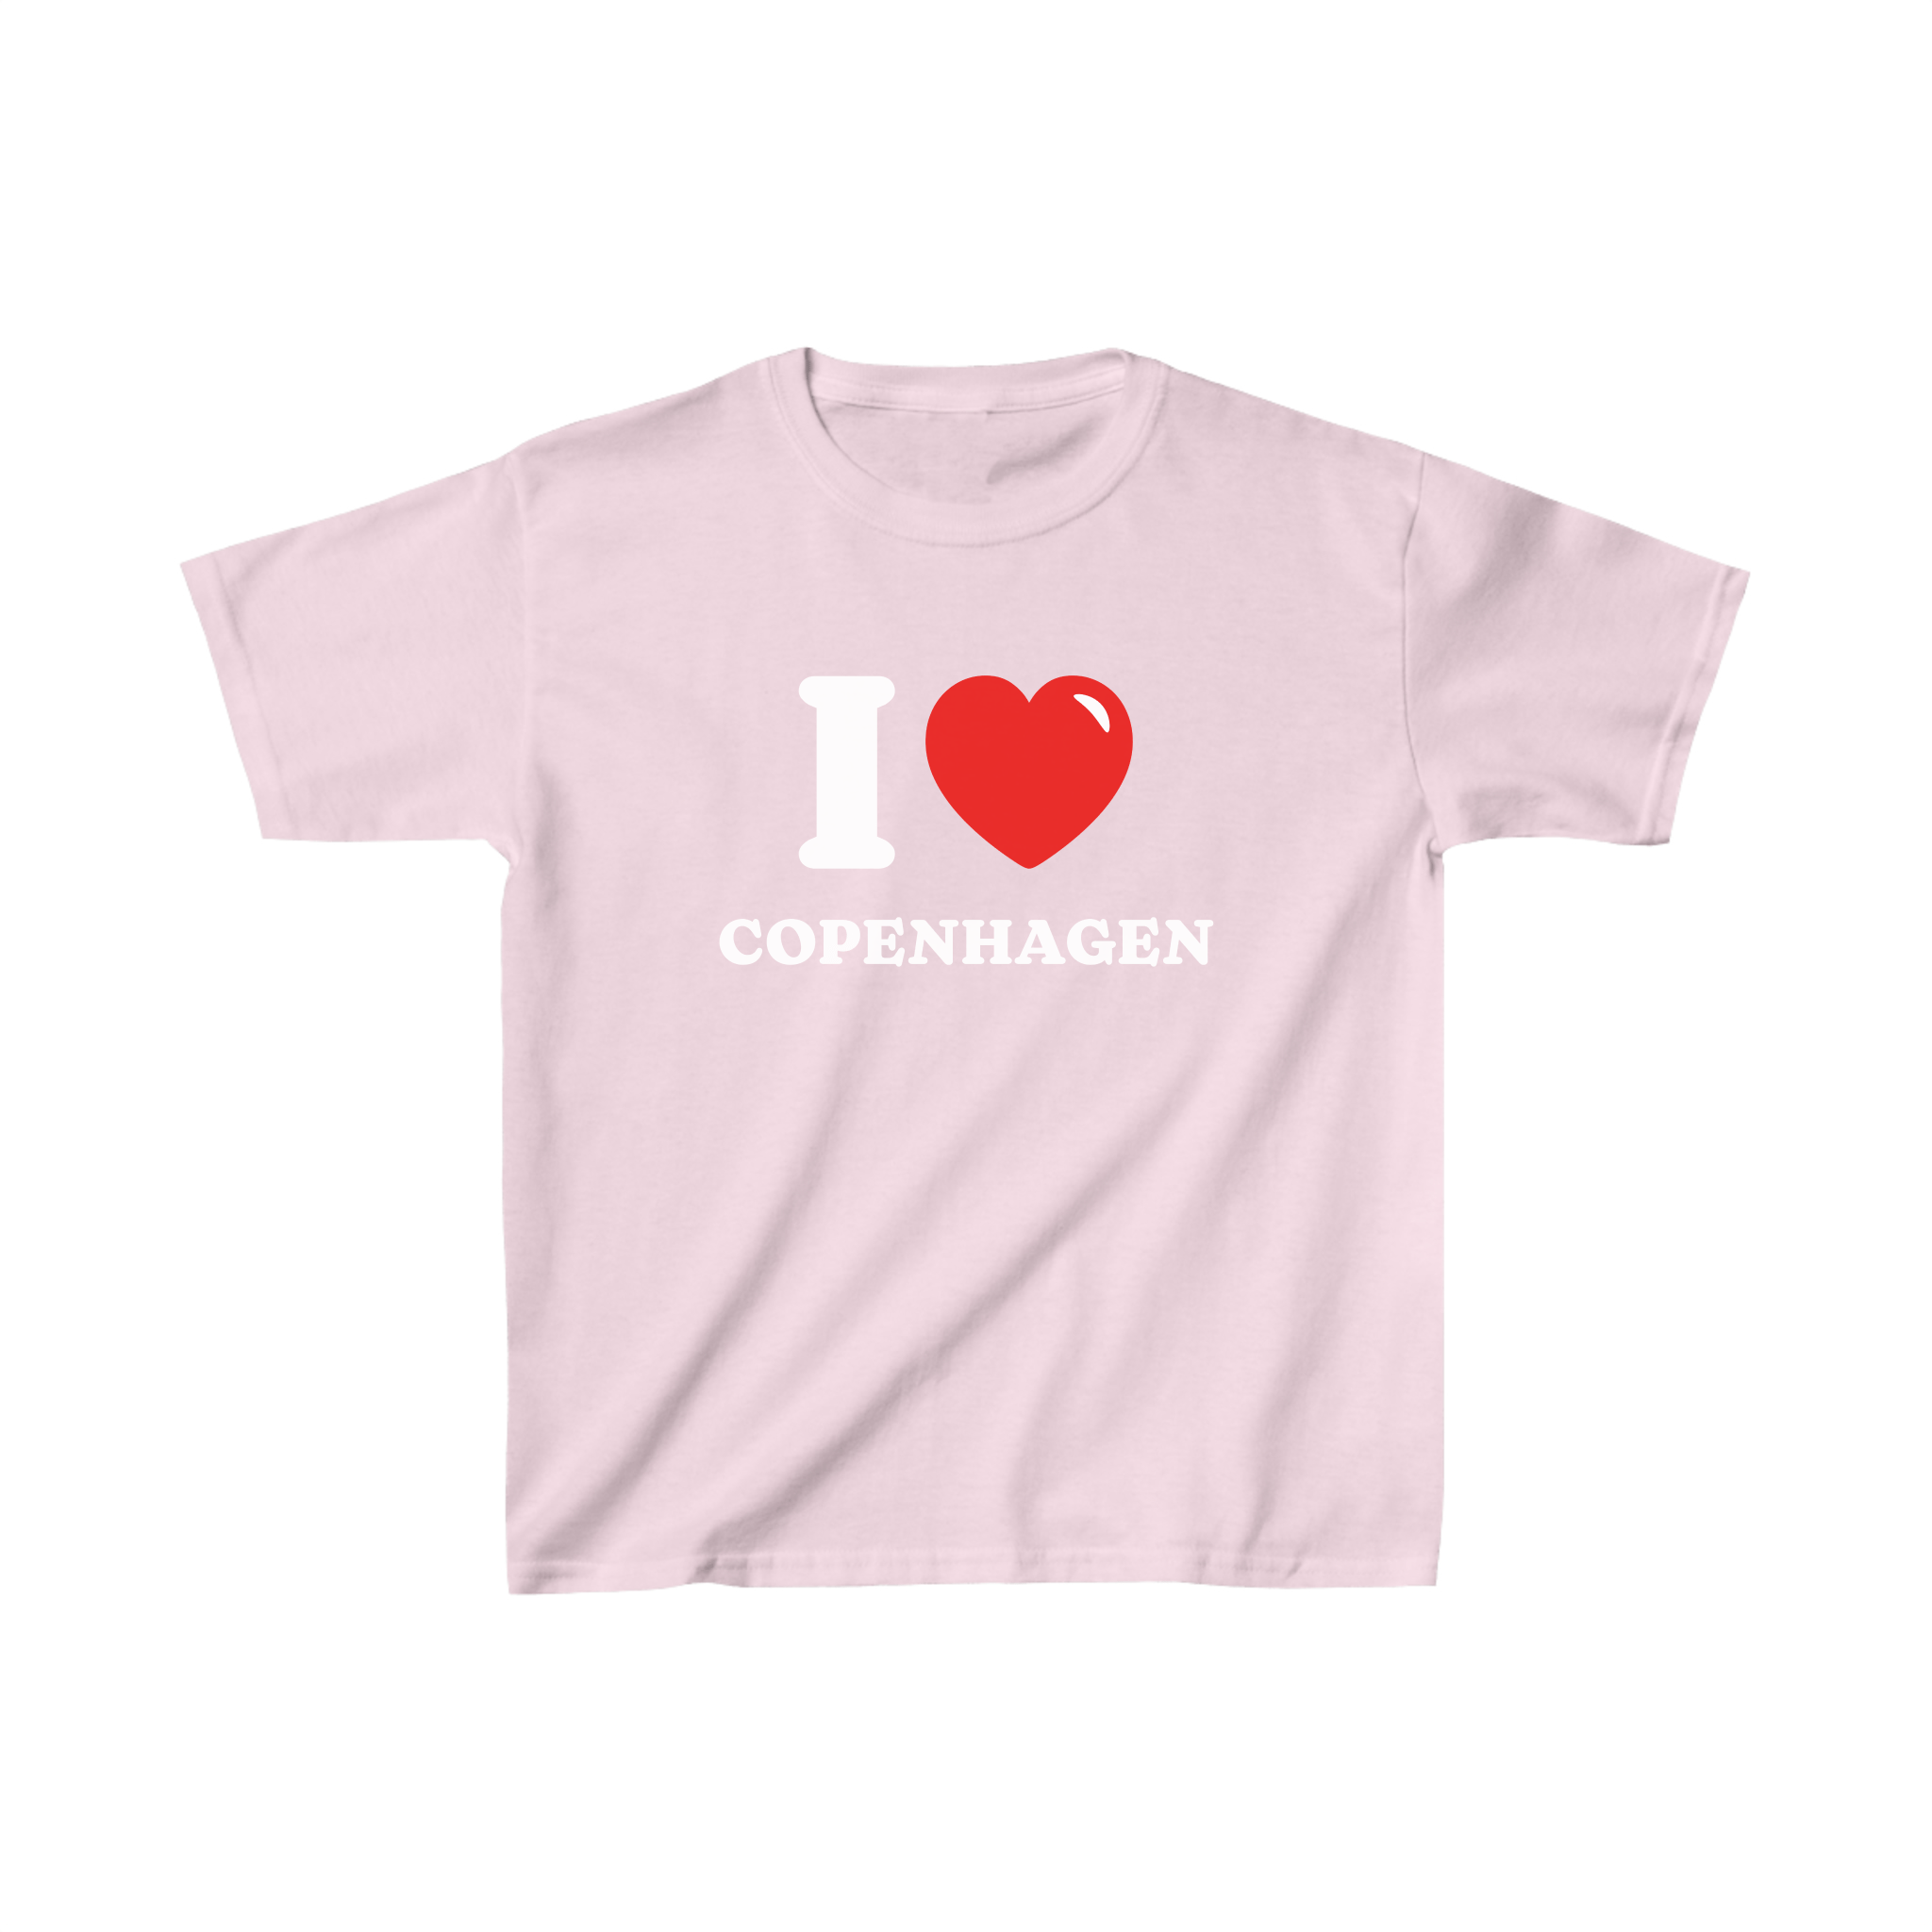 'I love Copenhagen' baby tee - In Print We Trust